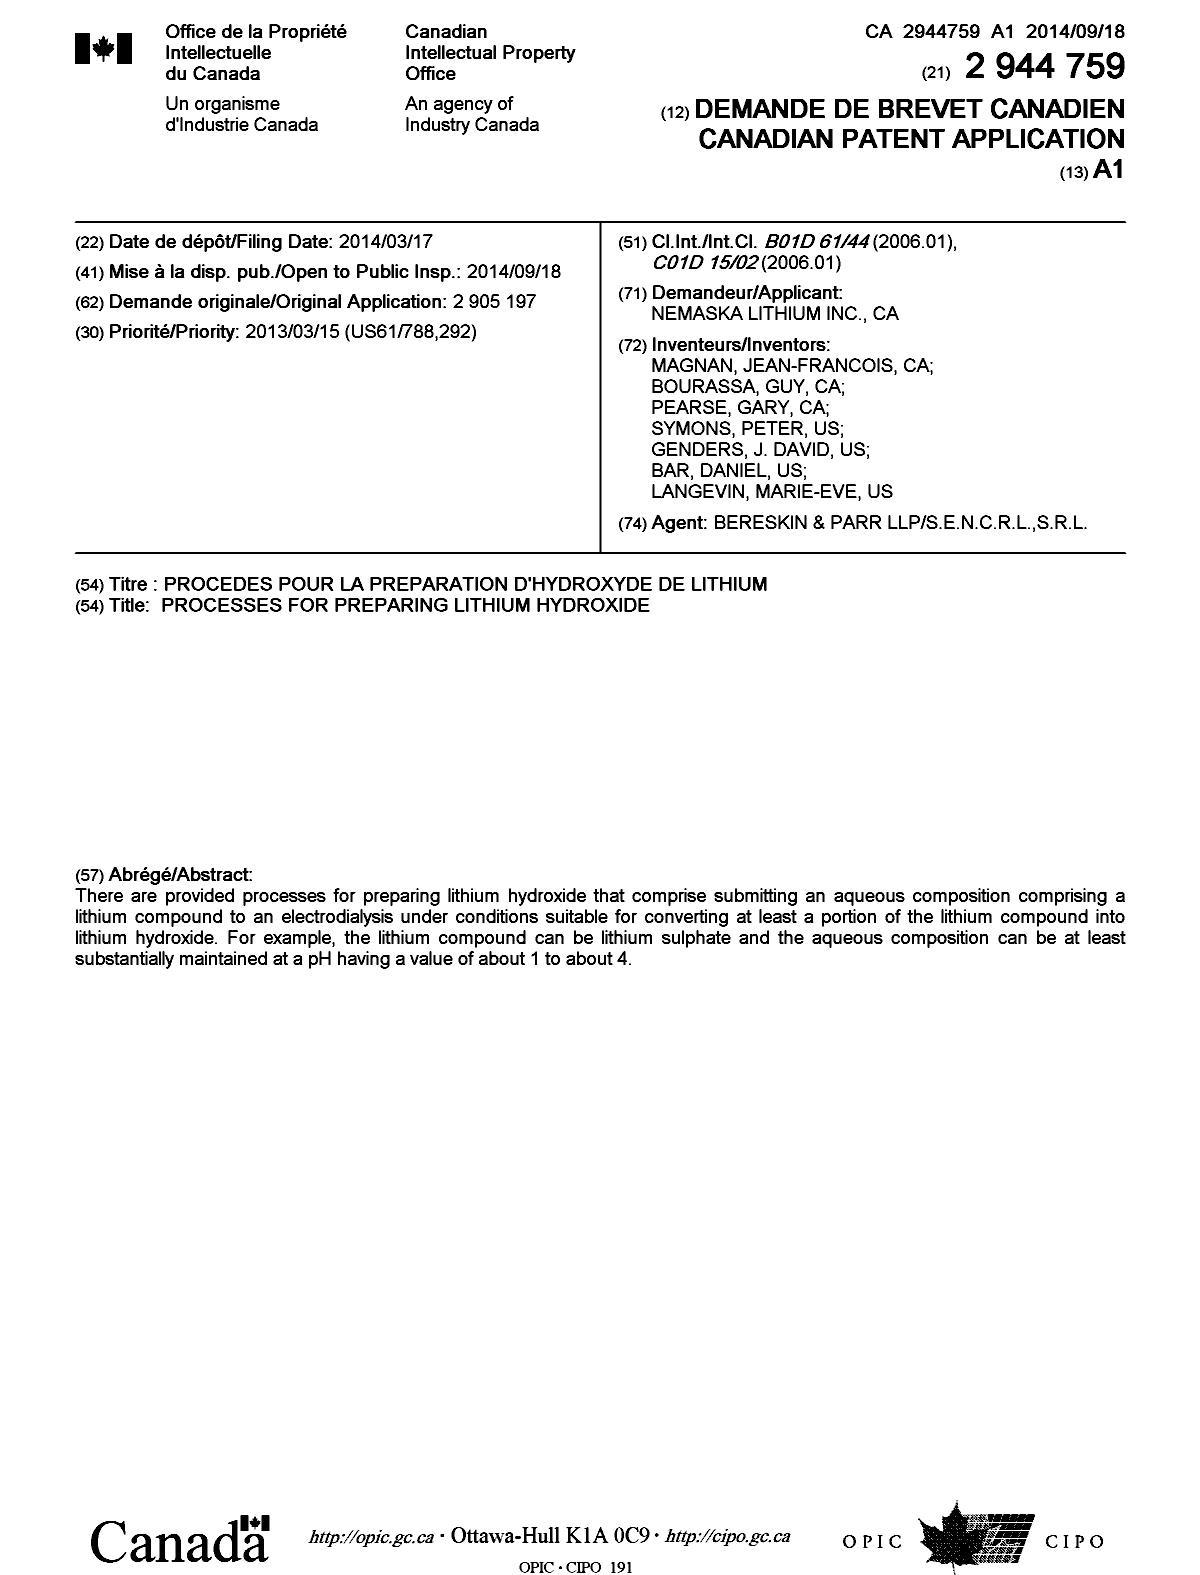 Document de brevet canadien 2944759. Page couverture 20151204. Image 1 de 1